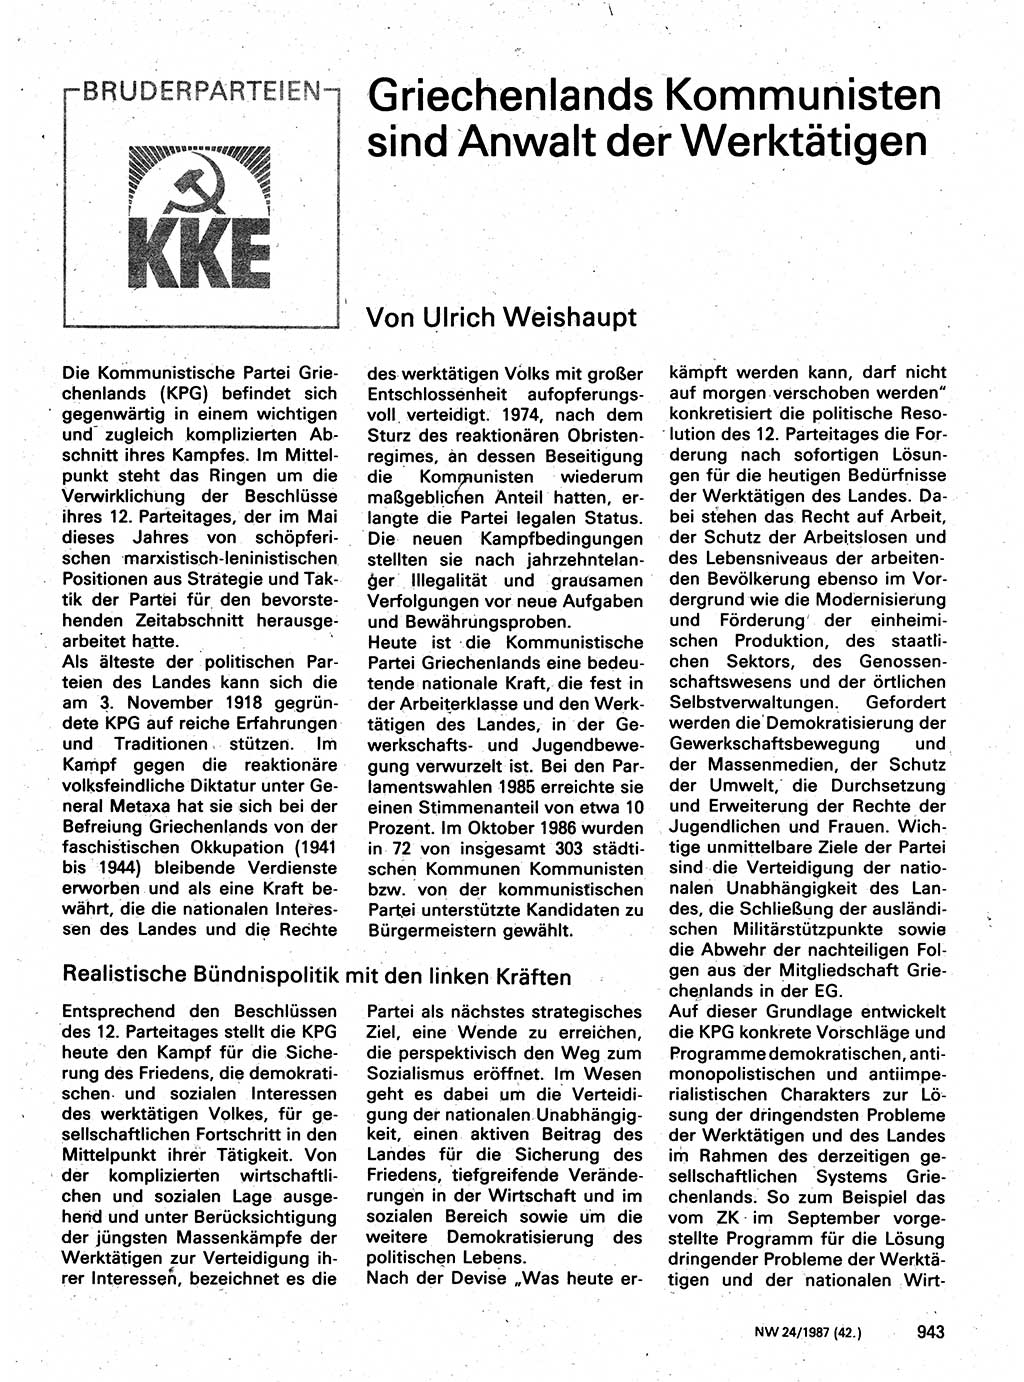 Neuer Weg (NW), Organ des Zentralkomitees (ZK) der SED (Sozialistische Einheitspartei Deutschlands) für Fragen des Parteilebens, 42. Jahrgang [Deutsche Demokratische Republik (DDR)] 1987, Seite 943 (NW ZK SED DDR 1987, S. 943)